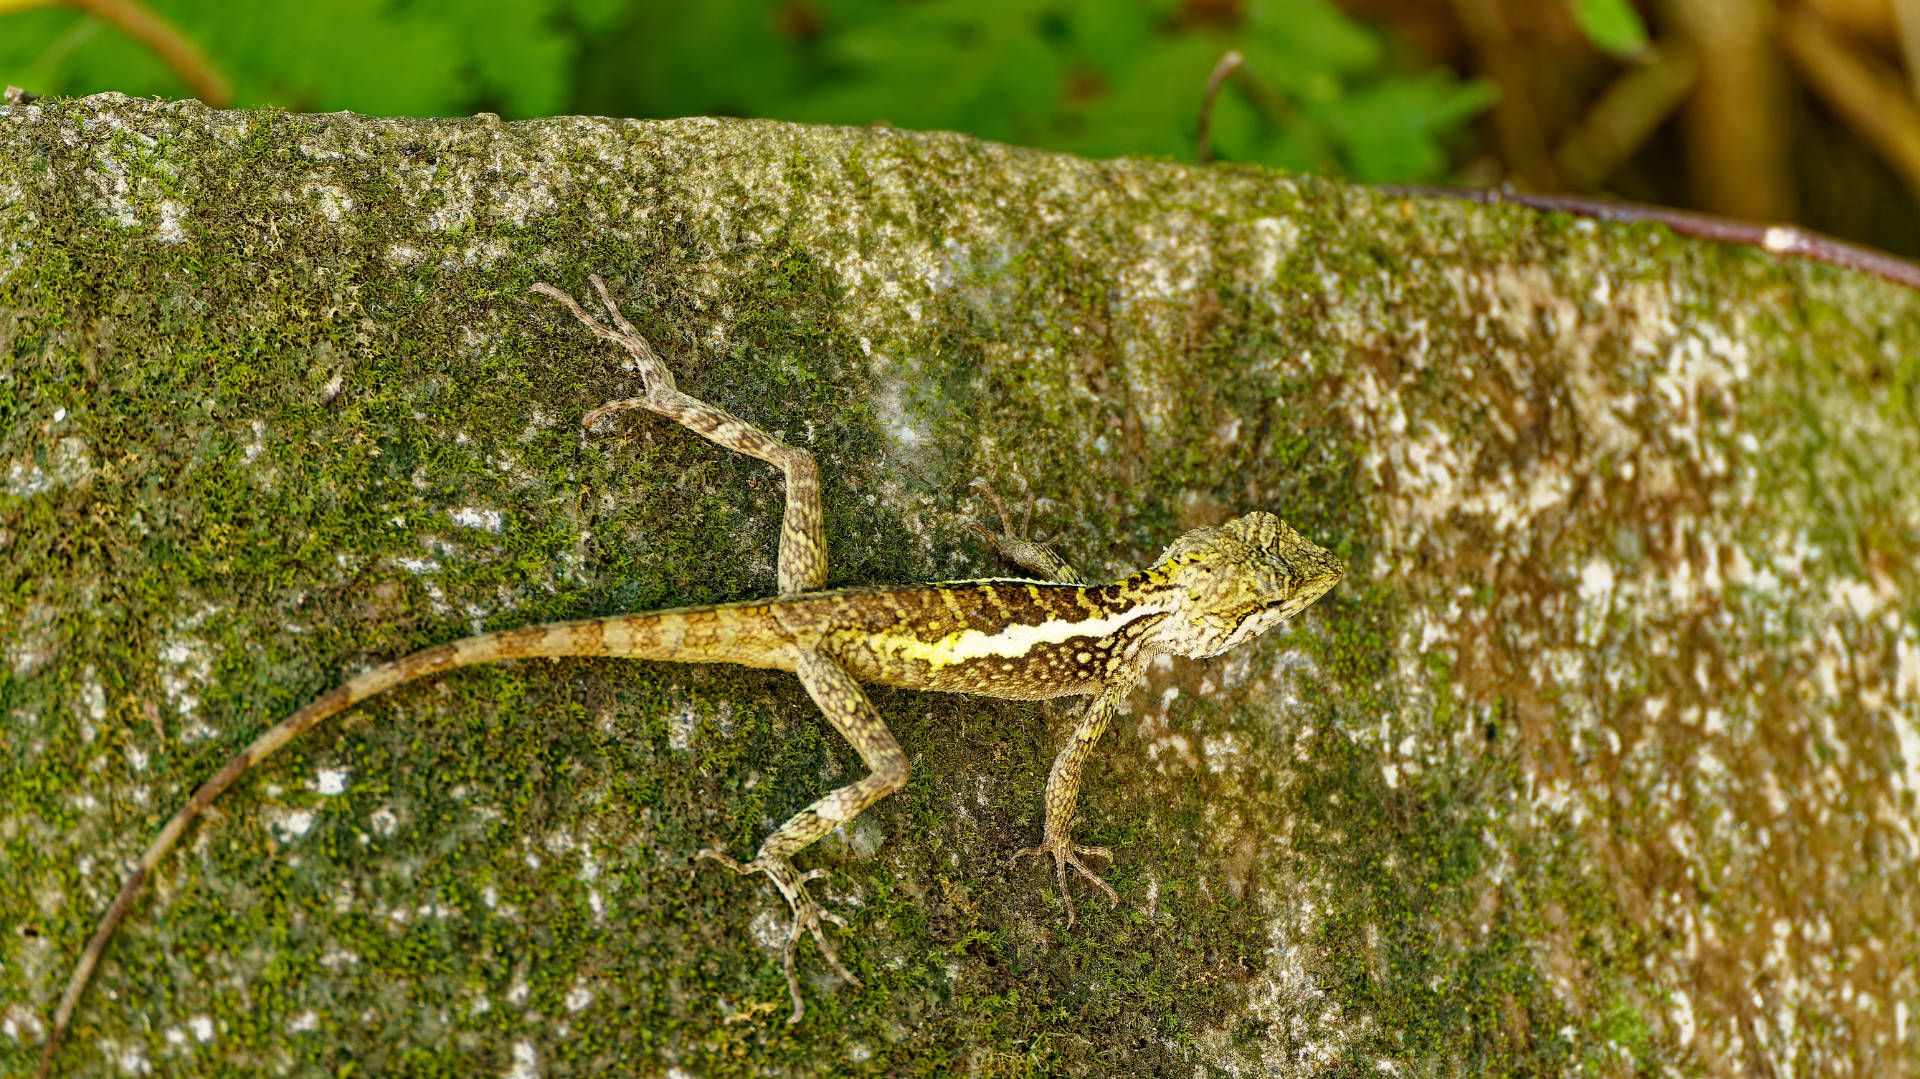 A lizard, approximately 30cm long, climbing a vertical wall.